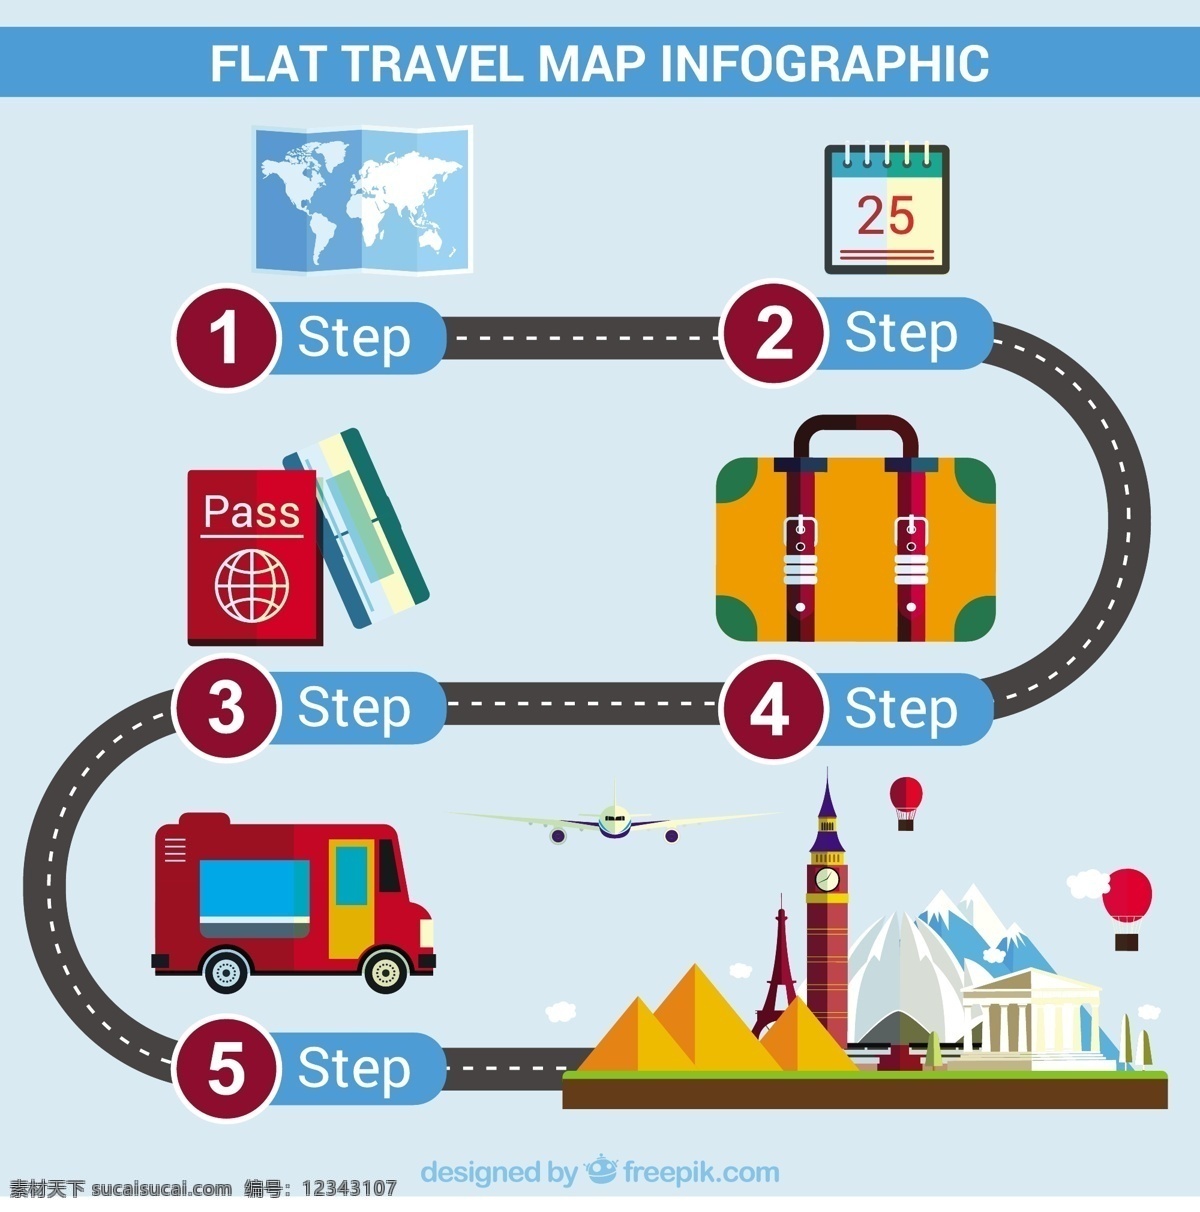 旅游 信息 图表 古迹 商务 旅行 模板 地图 路 世界 世界地图 营销 平面 工艺图表模板 数据 平面设计 步骤 商业图表